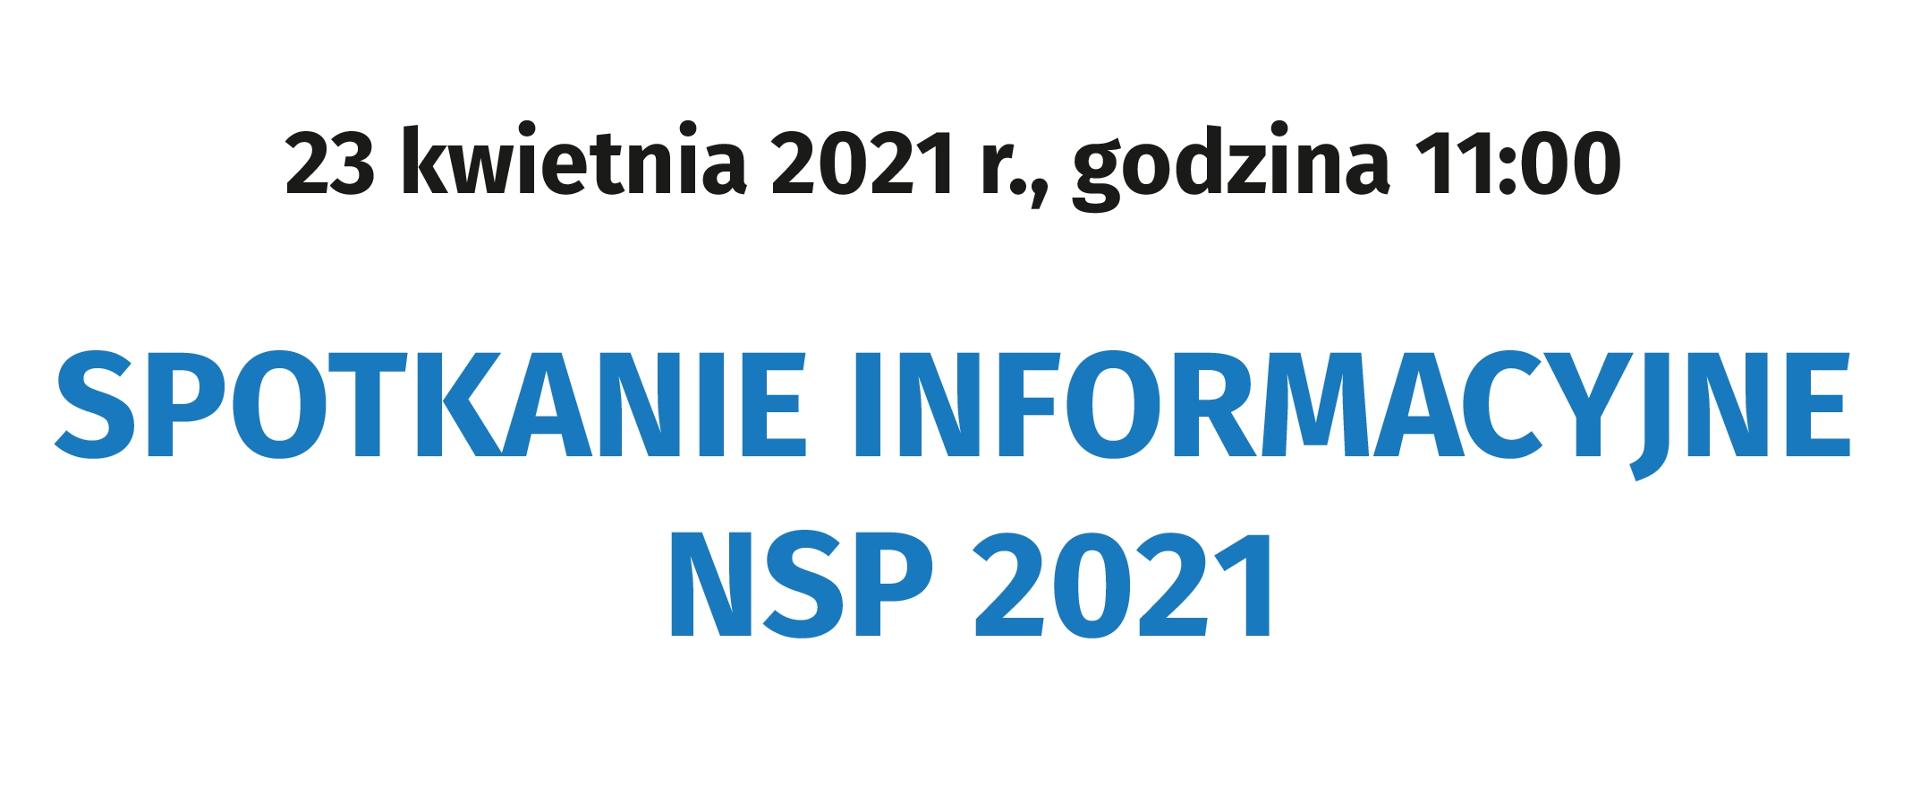 SPOTKANIE INFORMACYJNE NSP 2021 - plakat